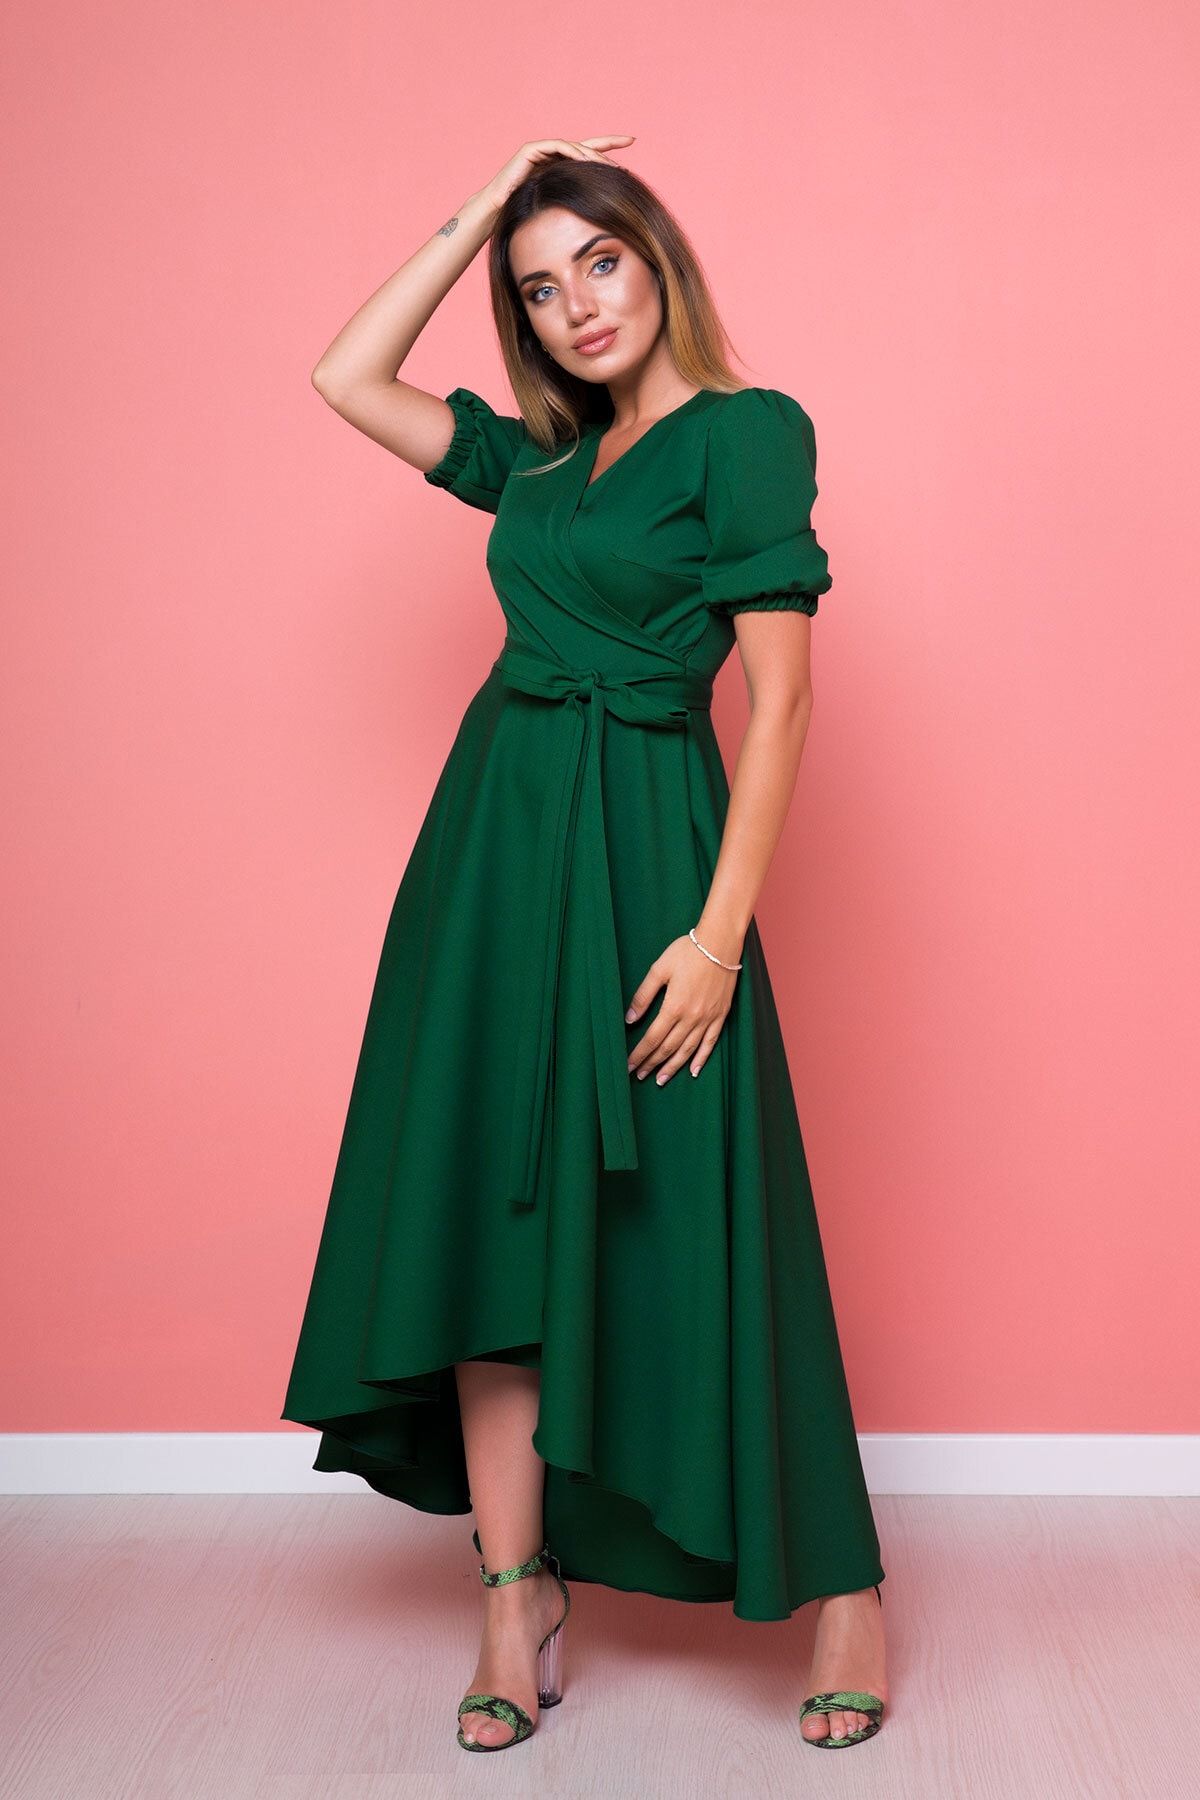 Bidoluelbise Kadın Asimetrik Kesim Zümrüt Yeşili Önü Kısa Arkası Uzun Kruvaze Yaka Elbise